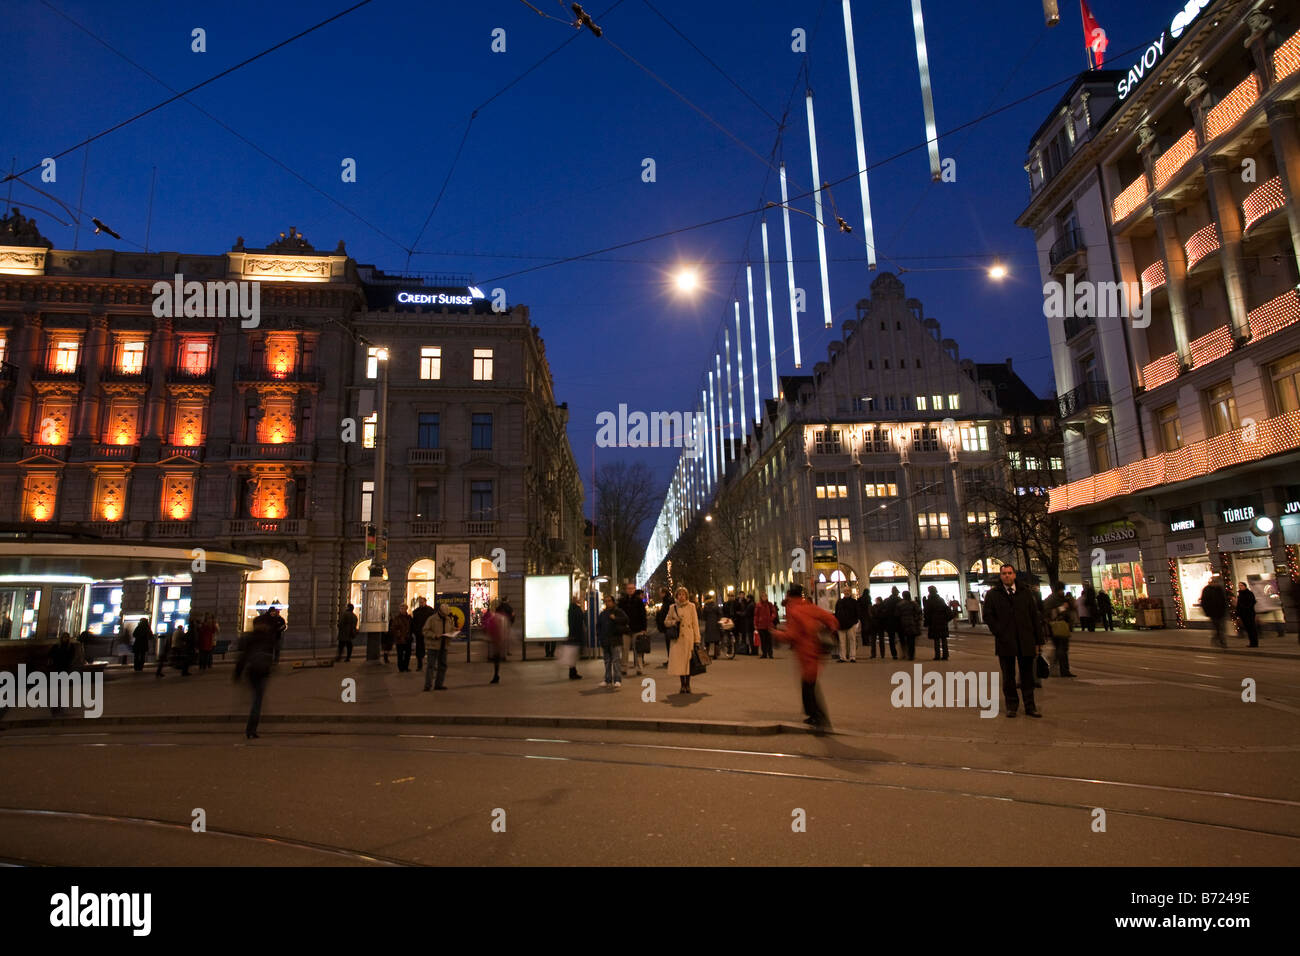 Parade-Platz bei Nacht mit Weihnachten Beleuchtung Zürich Schweiz  Stockfotografie - Alamy